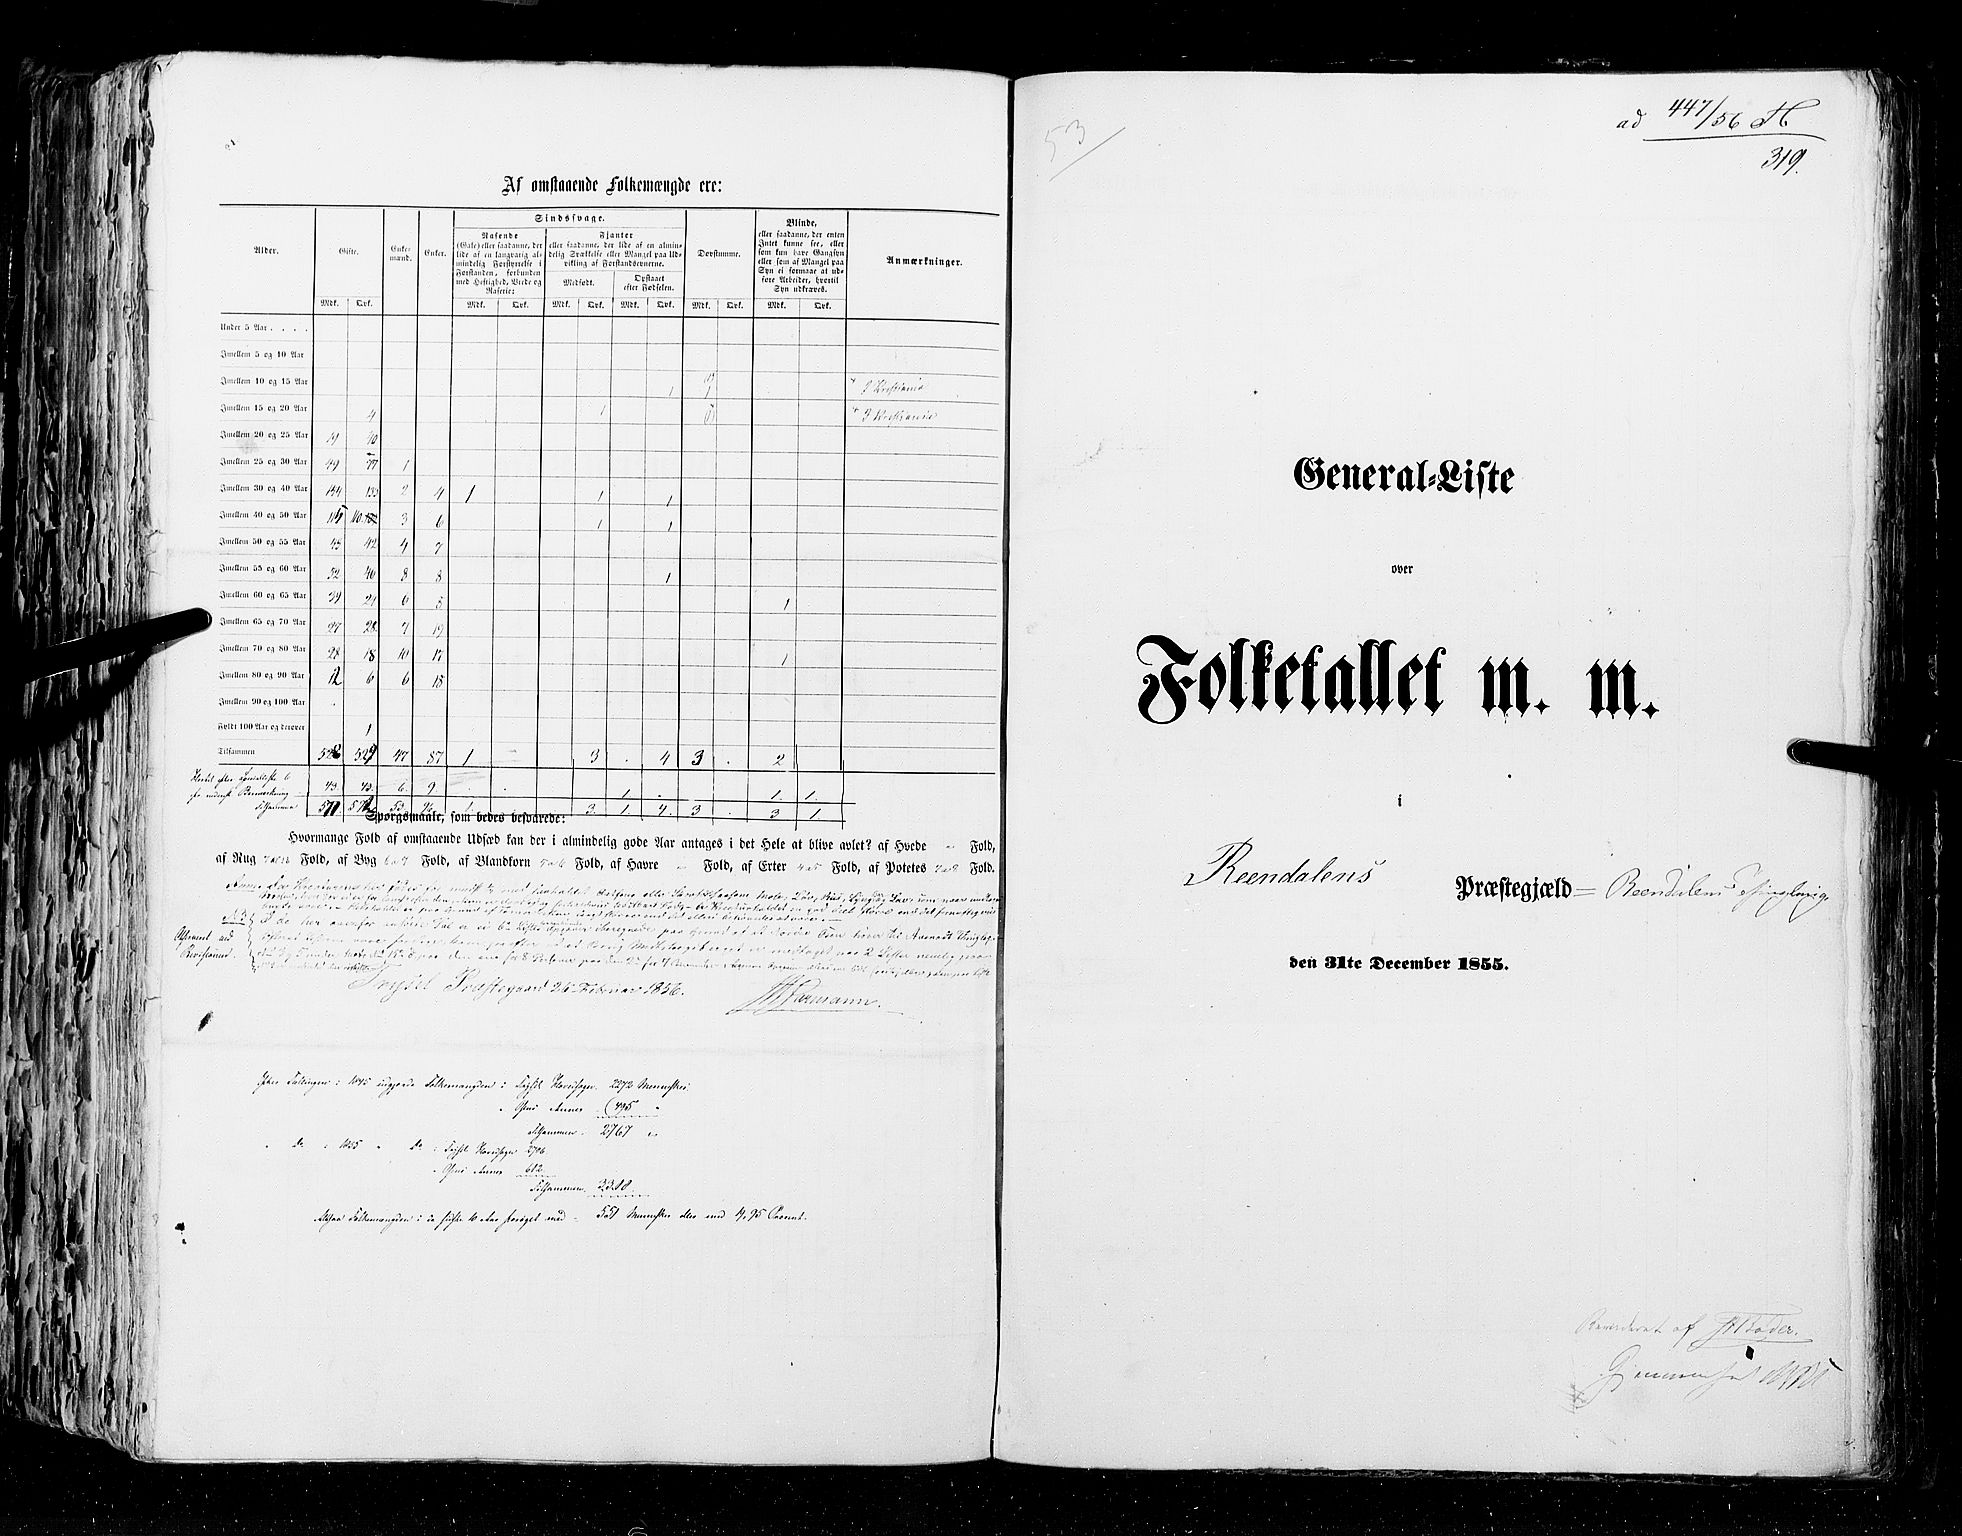 RA, Census 1855, vol. 1: Akershus amt, Smålenenes amt og Hedemarken amt, 1855, p. 319